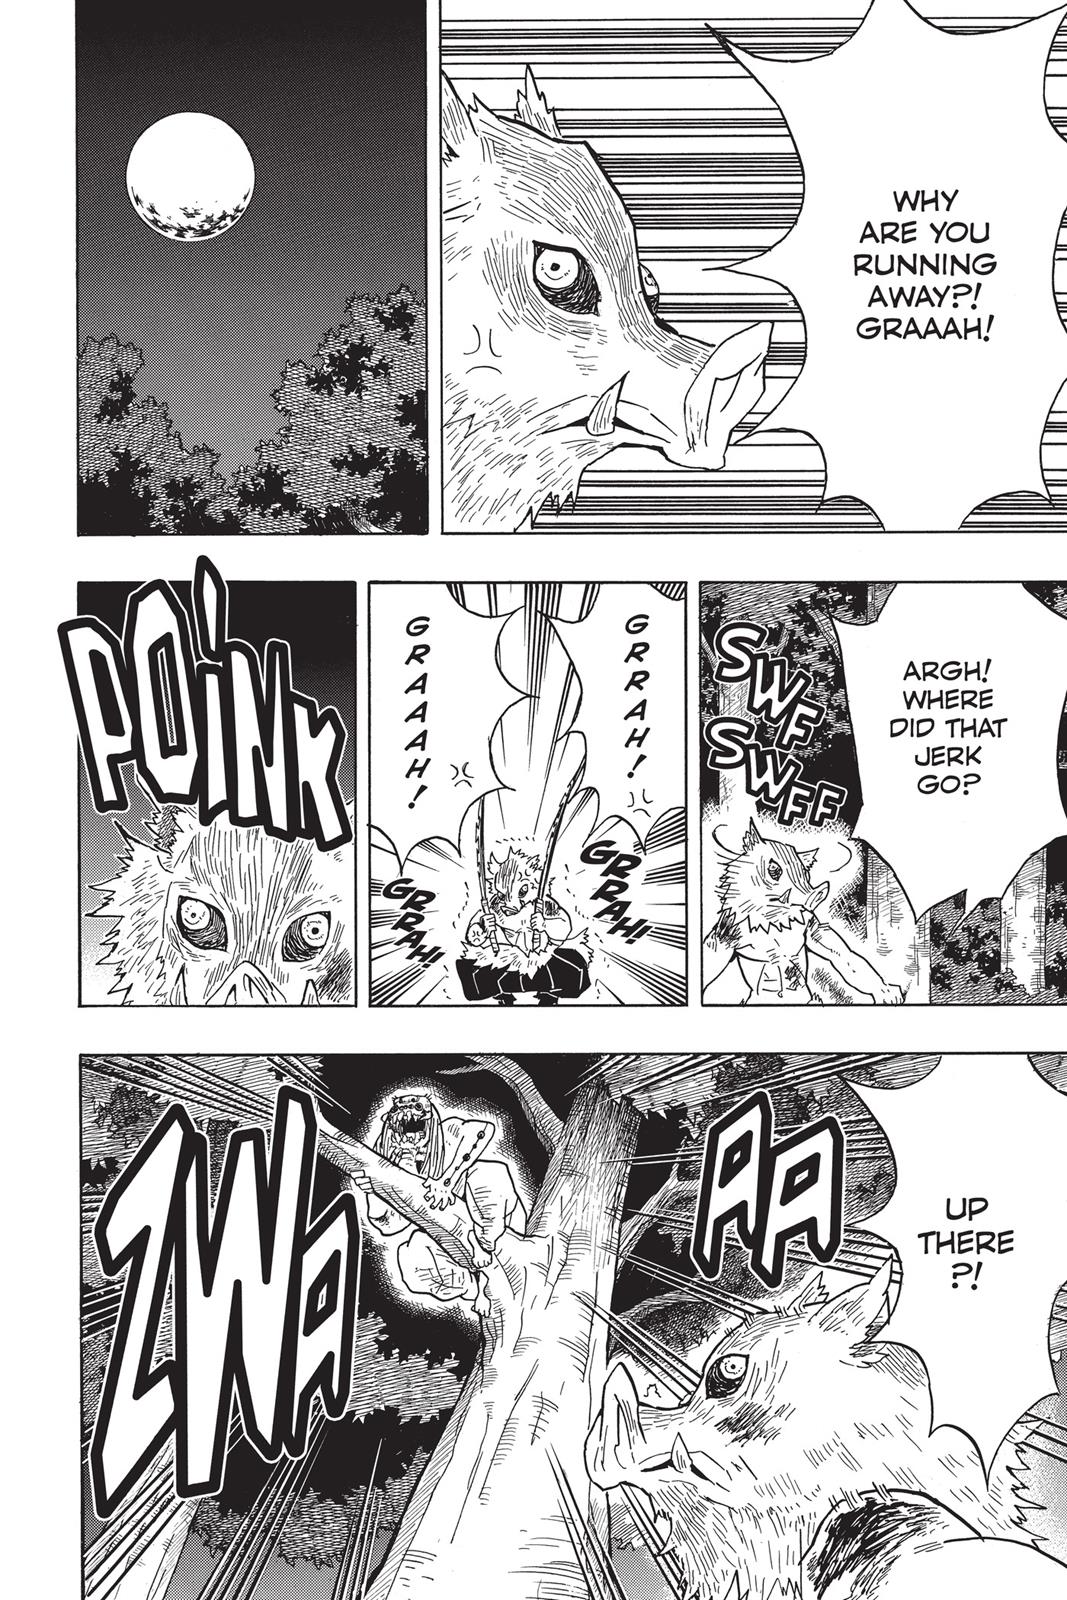 Demon Slayer Manga Manga Chapter - 36 - image 8